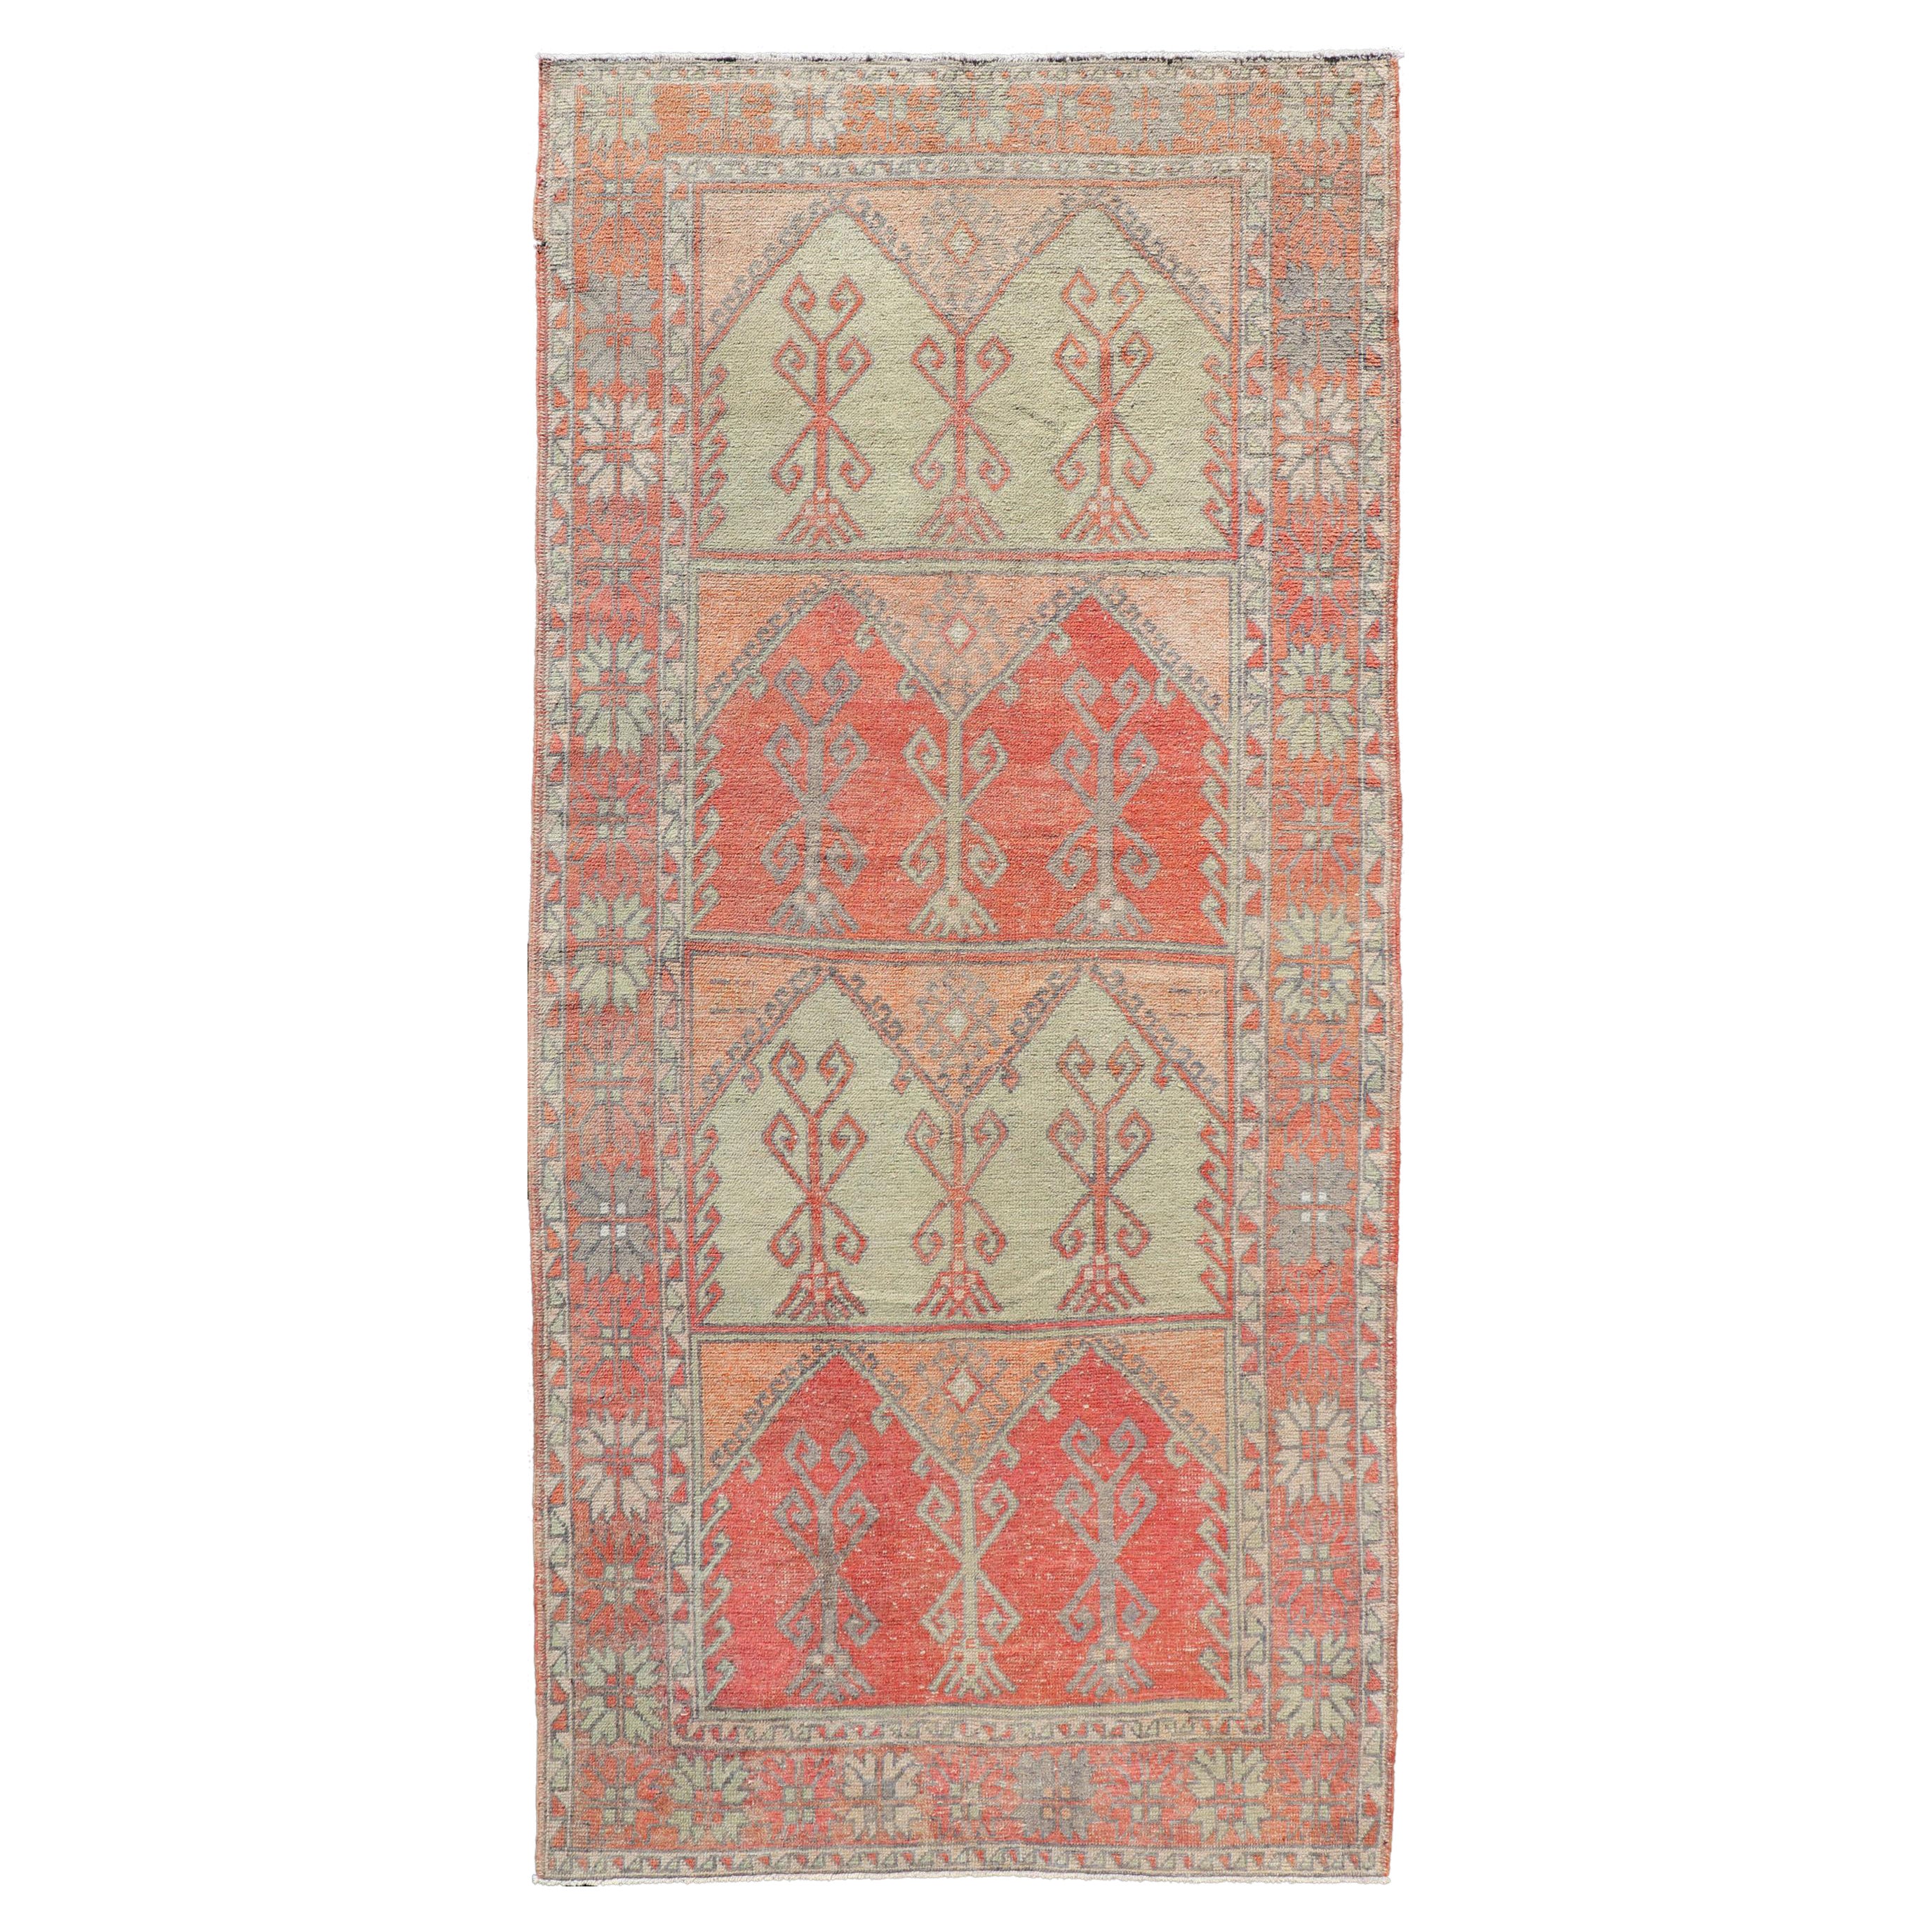 Tapis de galerie turc vintage en rouge délavé, corail, orange, rose doux et vert